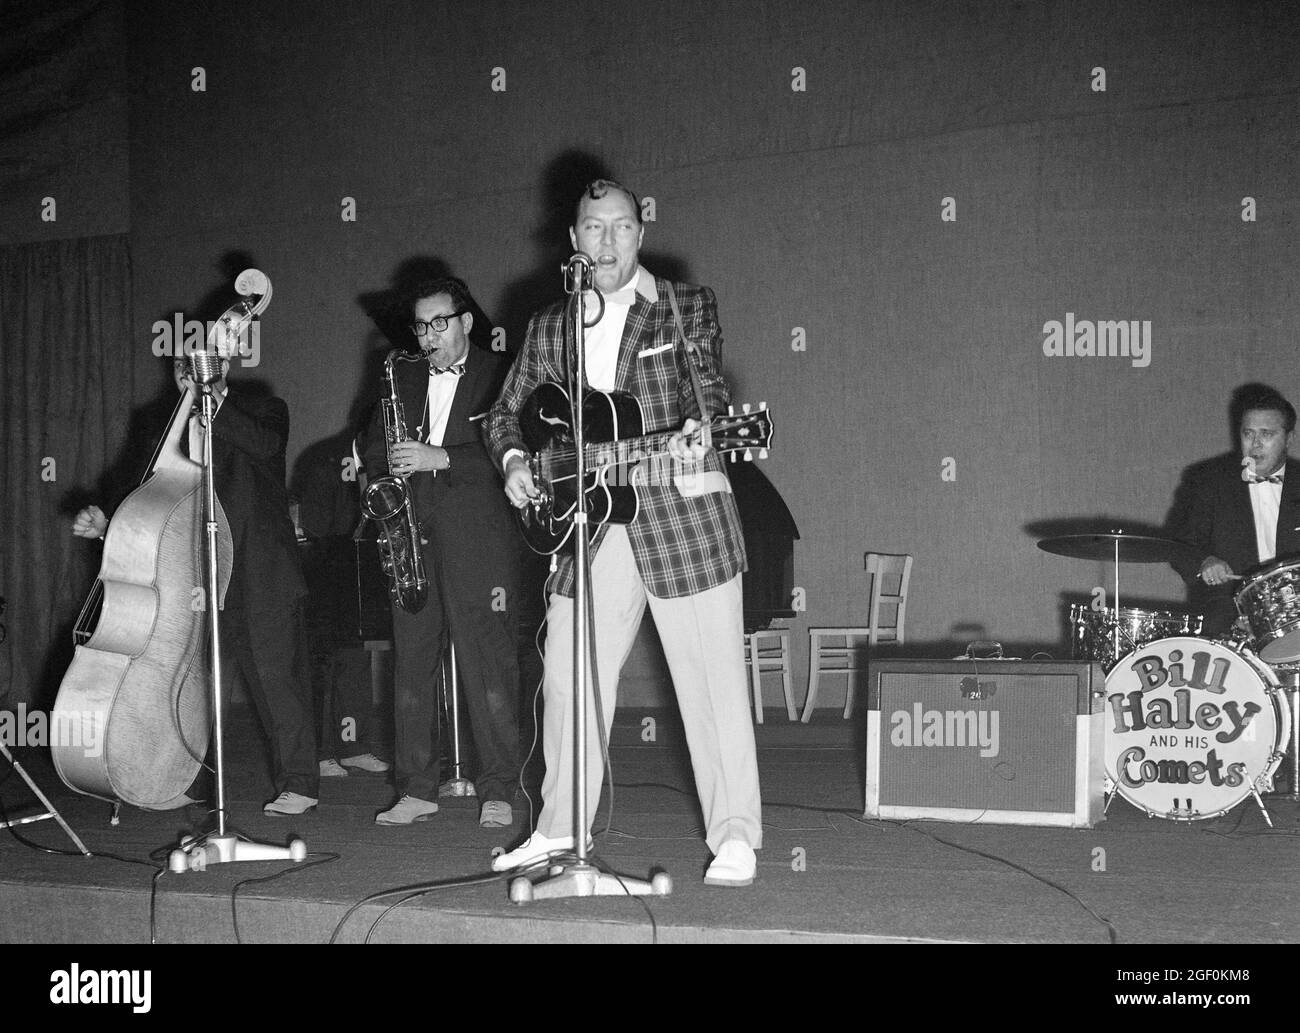 Novembre 1958, Bill Haley et ses comètes en scène, saxophone Rudy Pompilli, batteur Ralph Jones, Strasbourg, Alsace, France, Europe, Banque D'Images